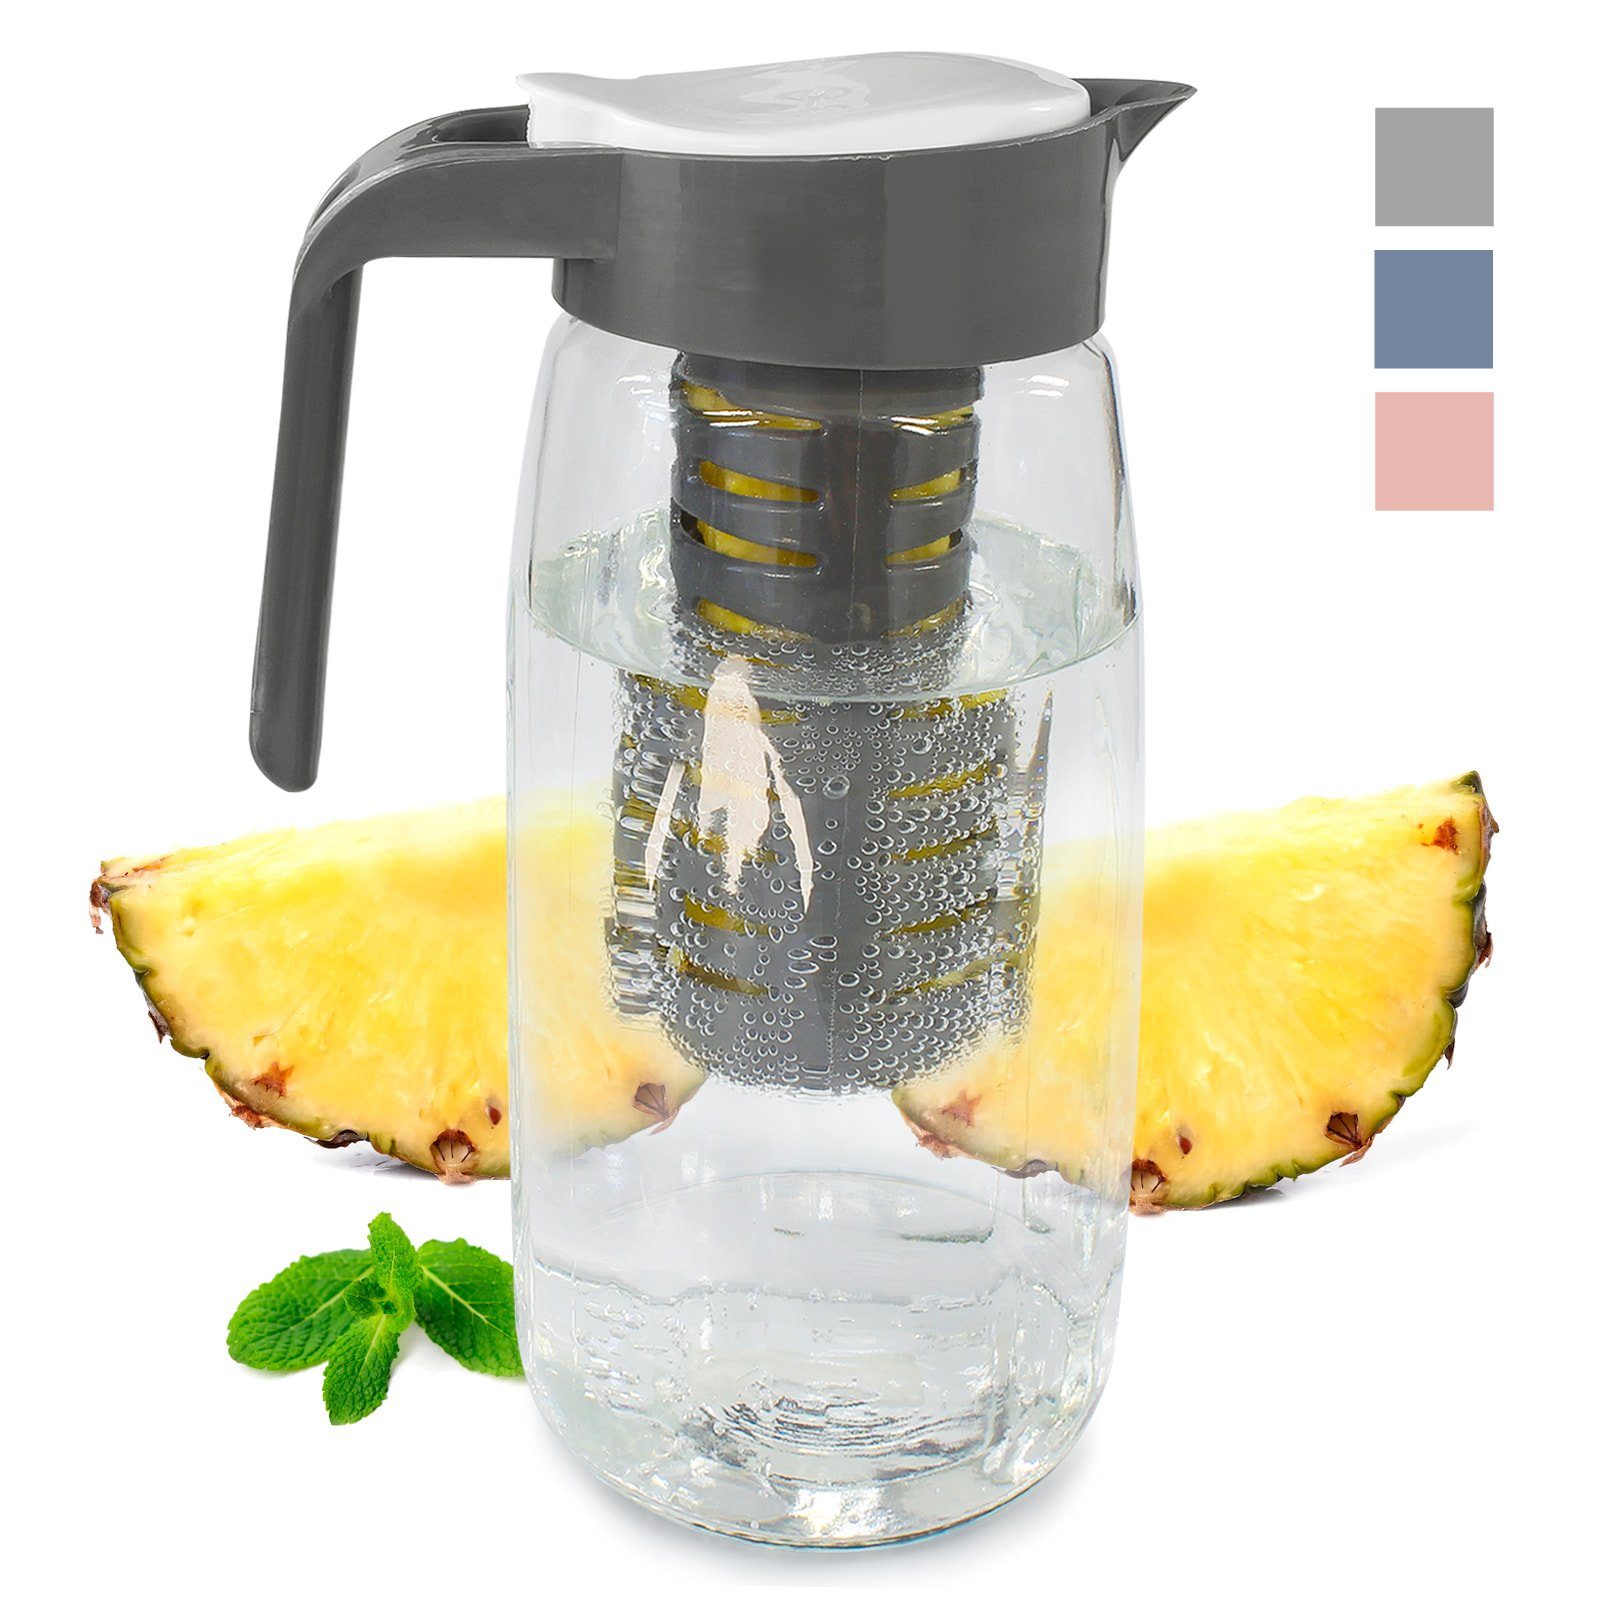 EAXUS Wasserkaraffe Glas Karaffe mit Fruchteinsatz - Wasser Karaffe mit Deckel, 1,5 Liter, Auslaufsicher, Spülmaschinenfest